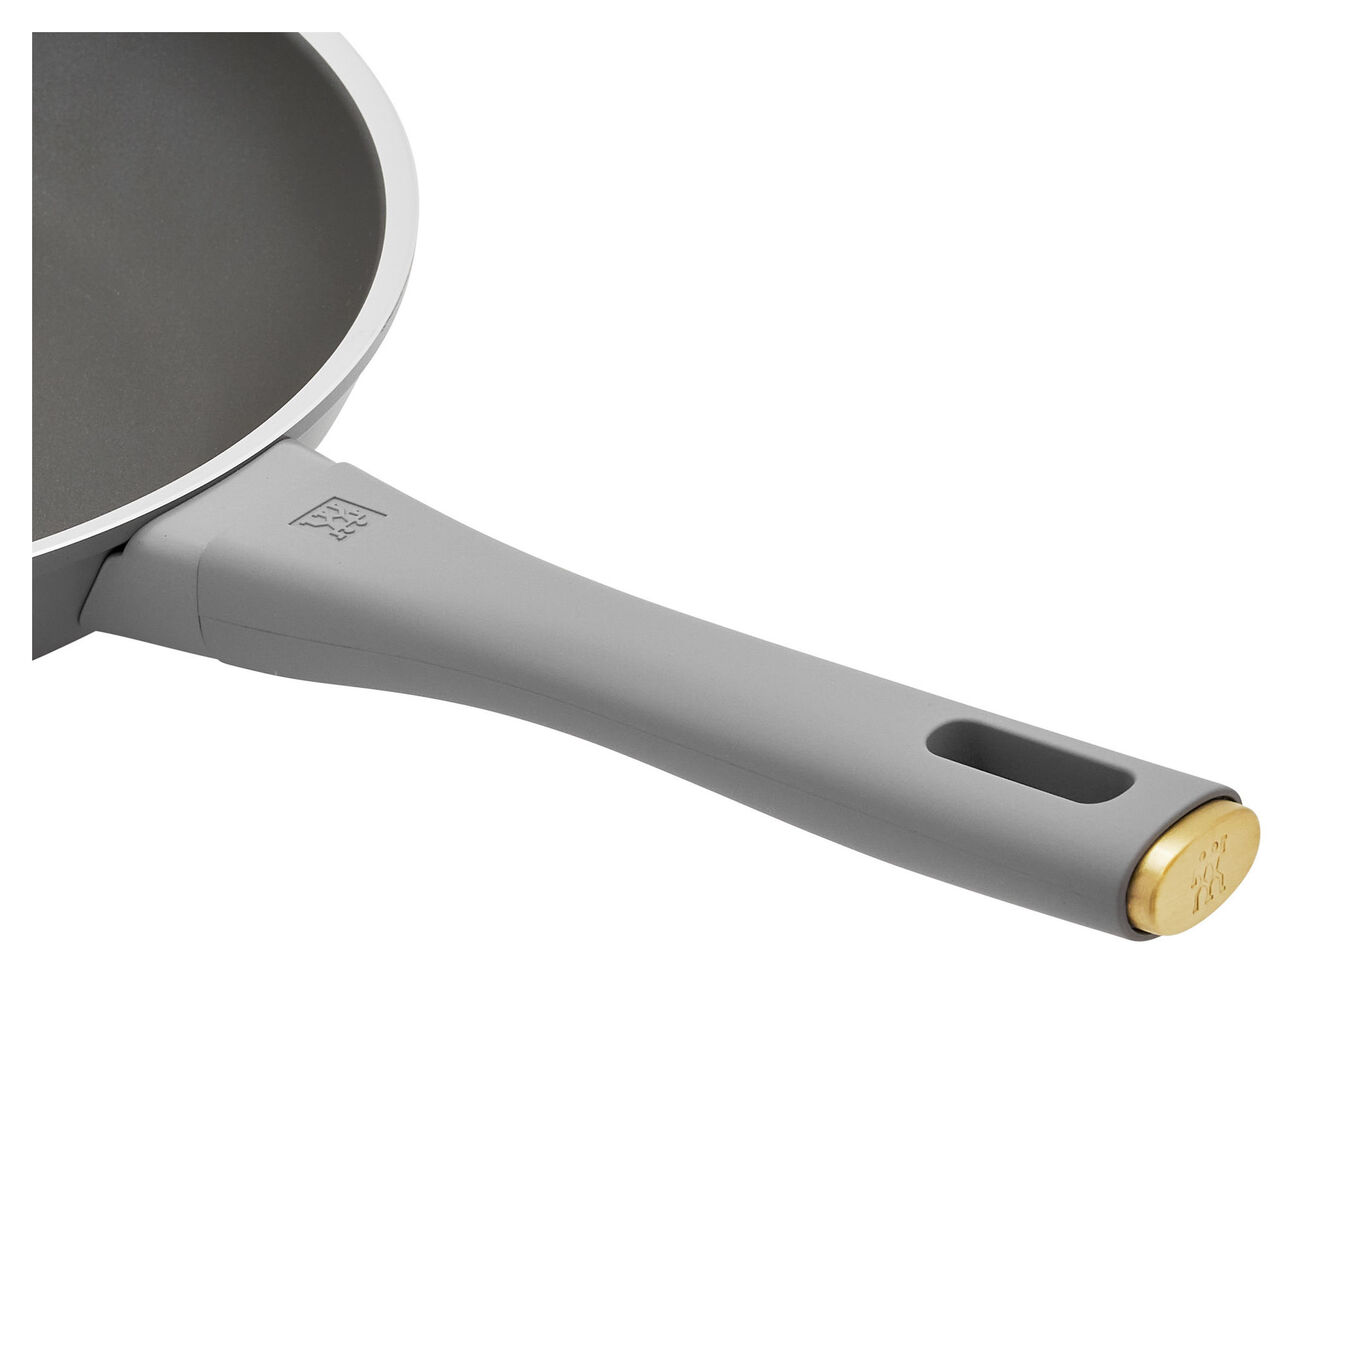 28 cm / 11 inch aluminium Frying pan,,large 5